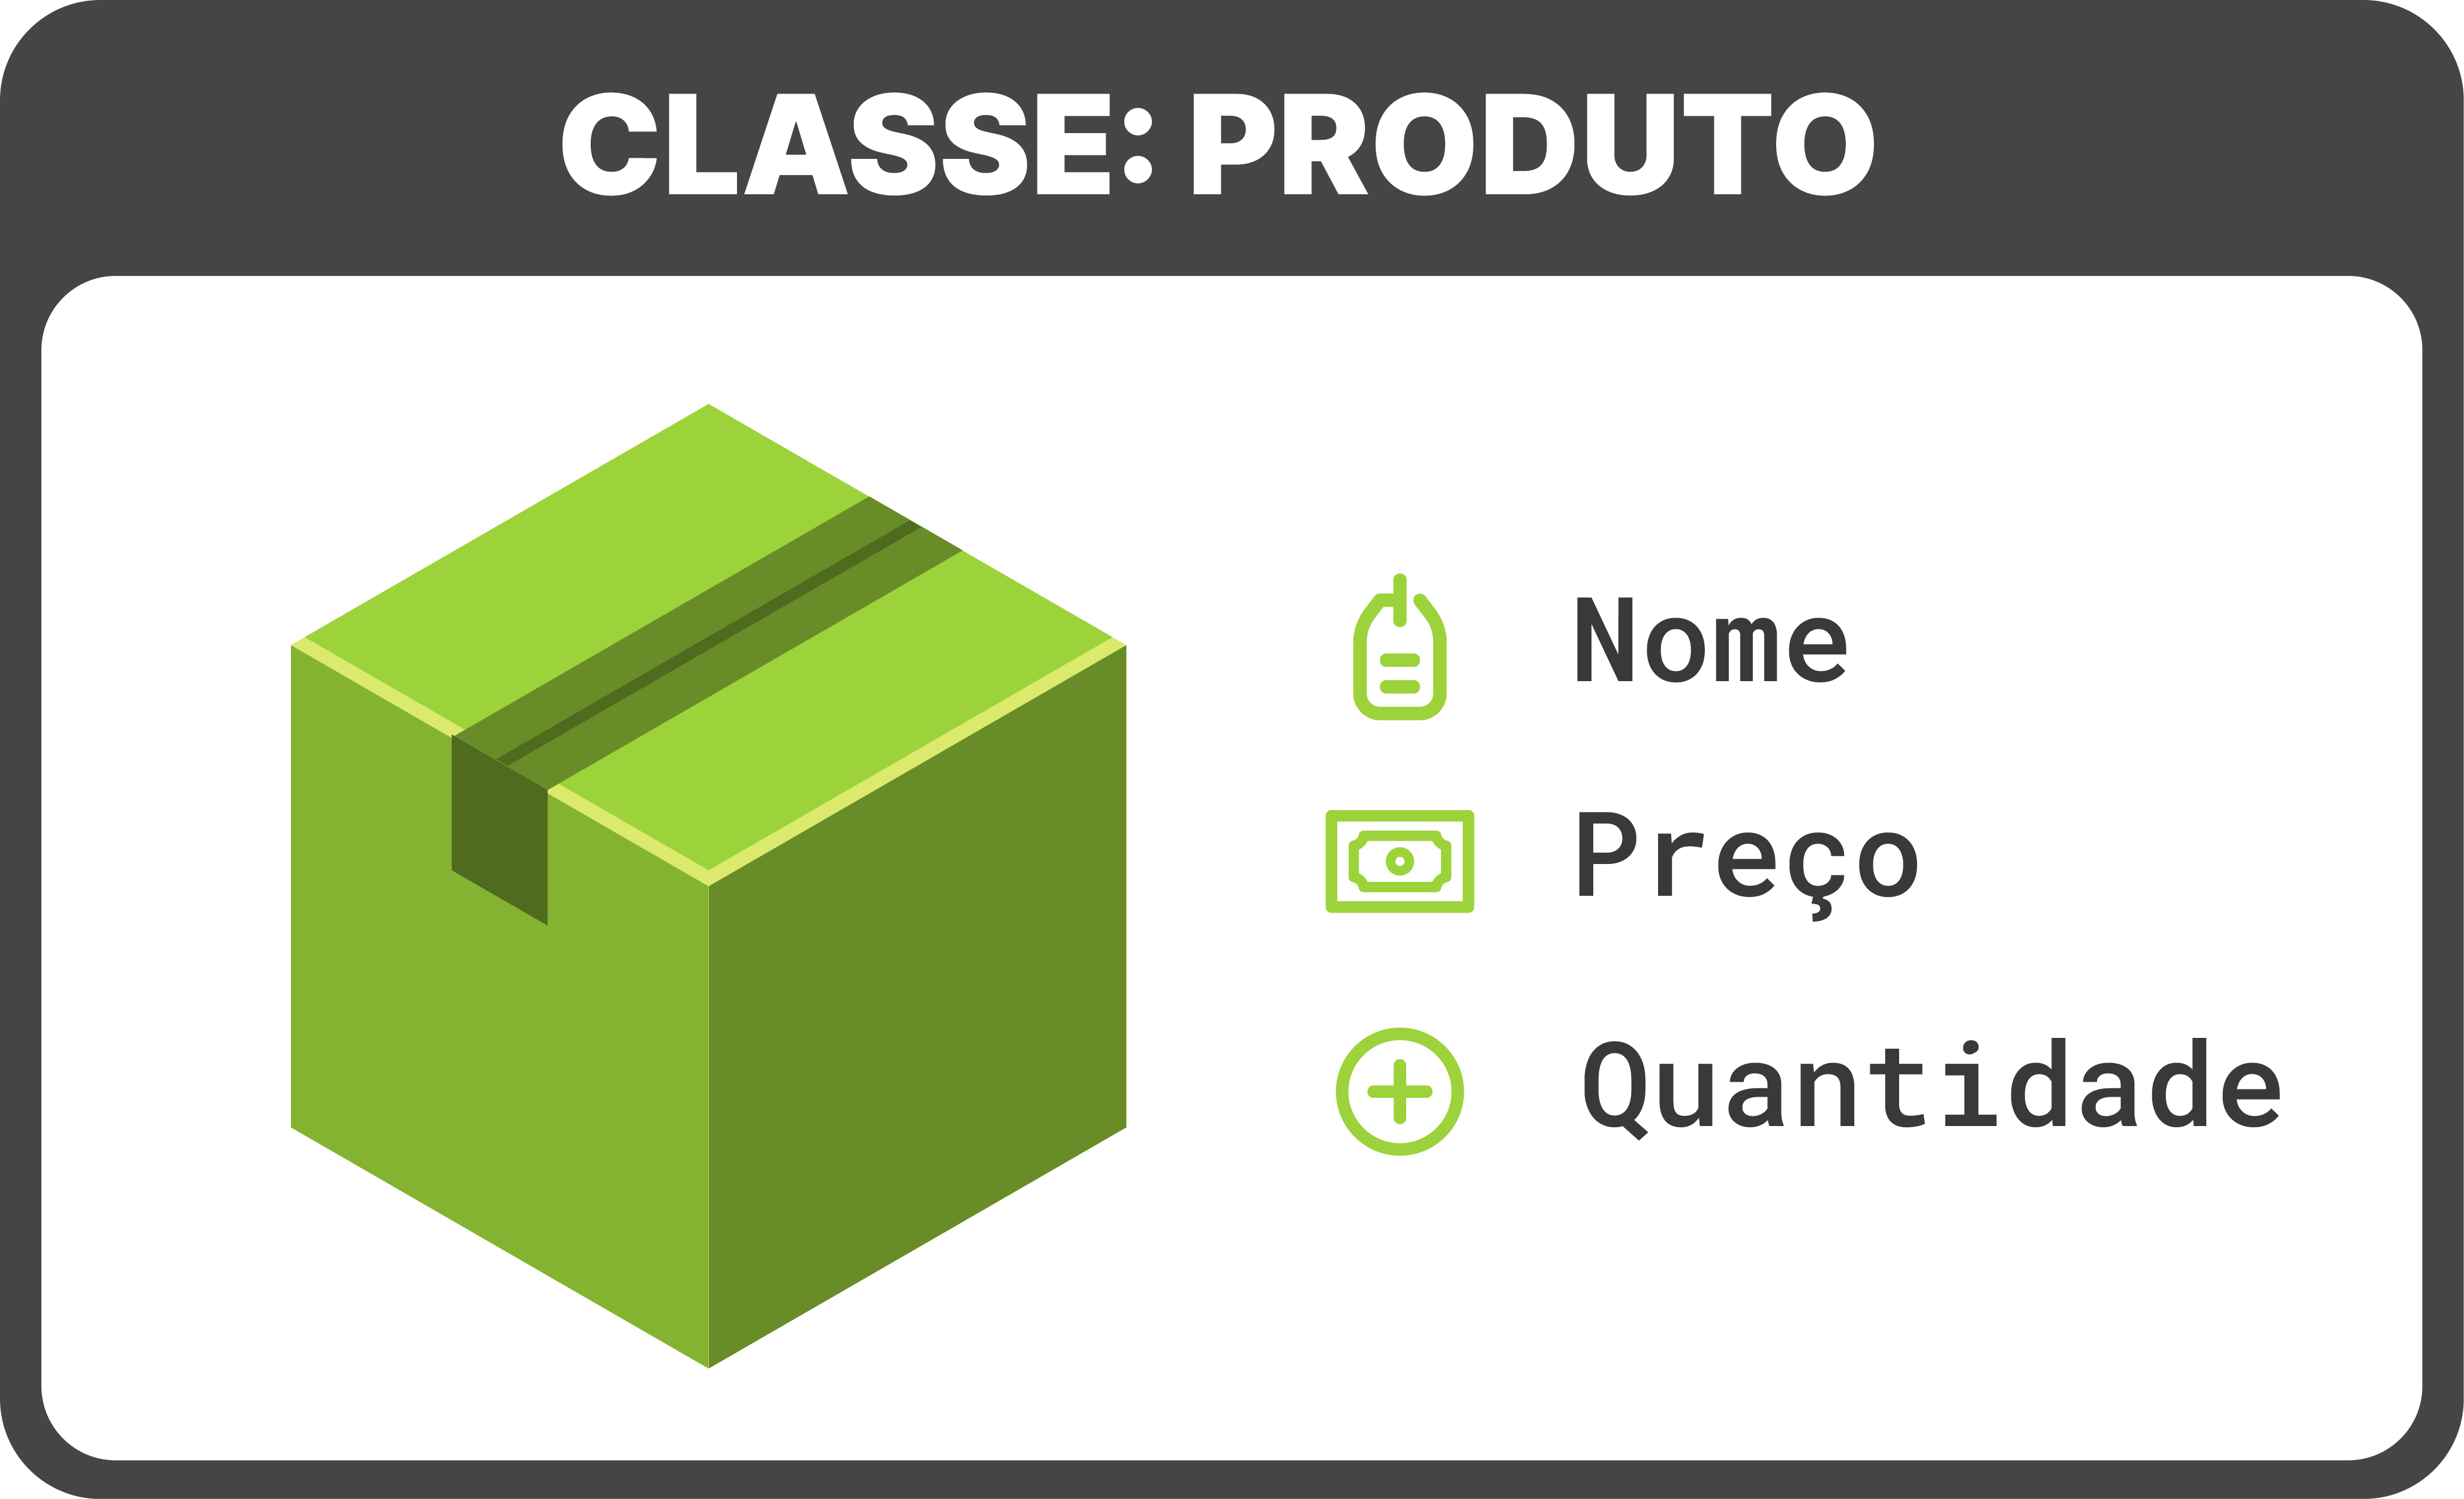 Na imagem, uma seção nomeada “Classe: Produto”. Dentro dessa seção, há uma ilustração de uma caixa verde fechada com fita. À direita da caixa, há três campos de texto, são eles: “Nome”, “Preço” e “Quantidade”.